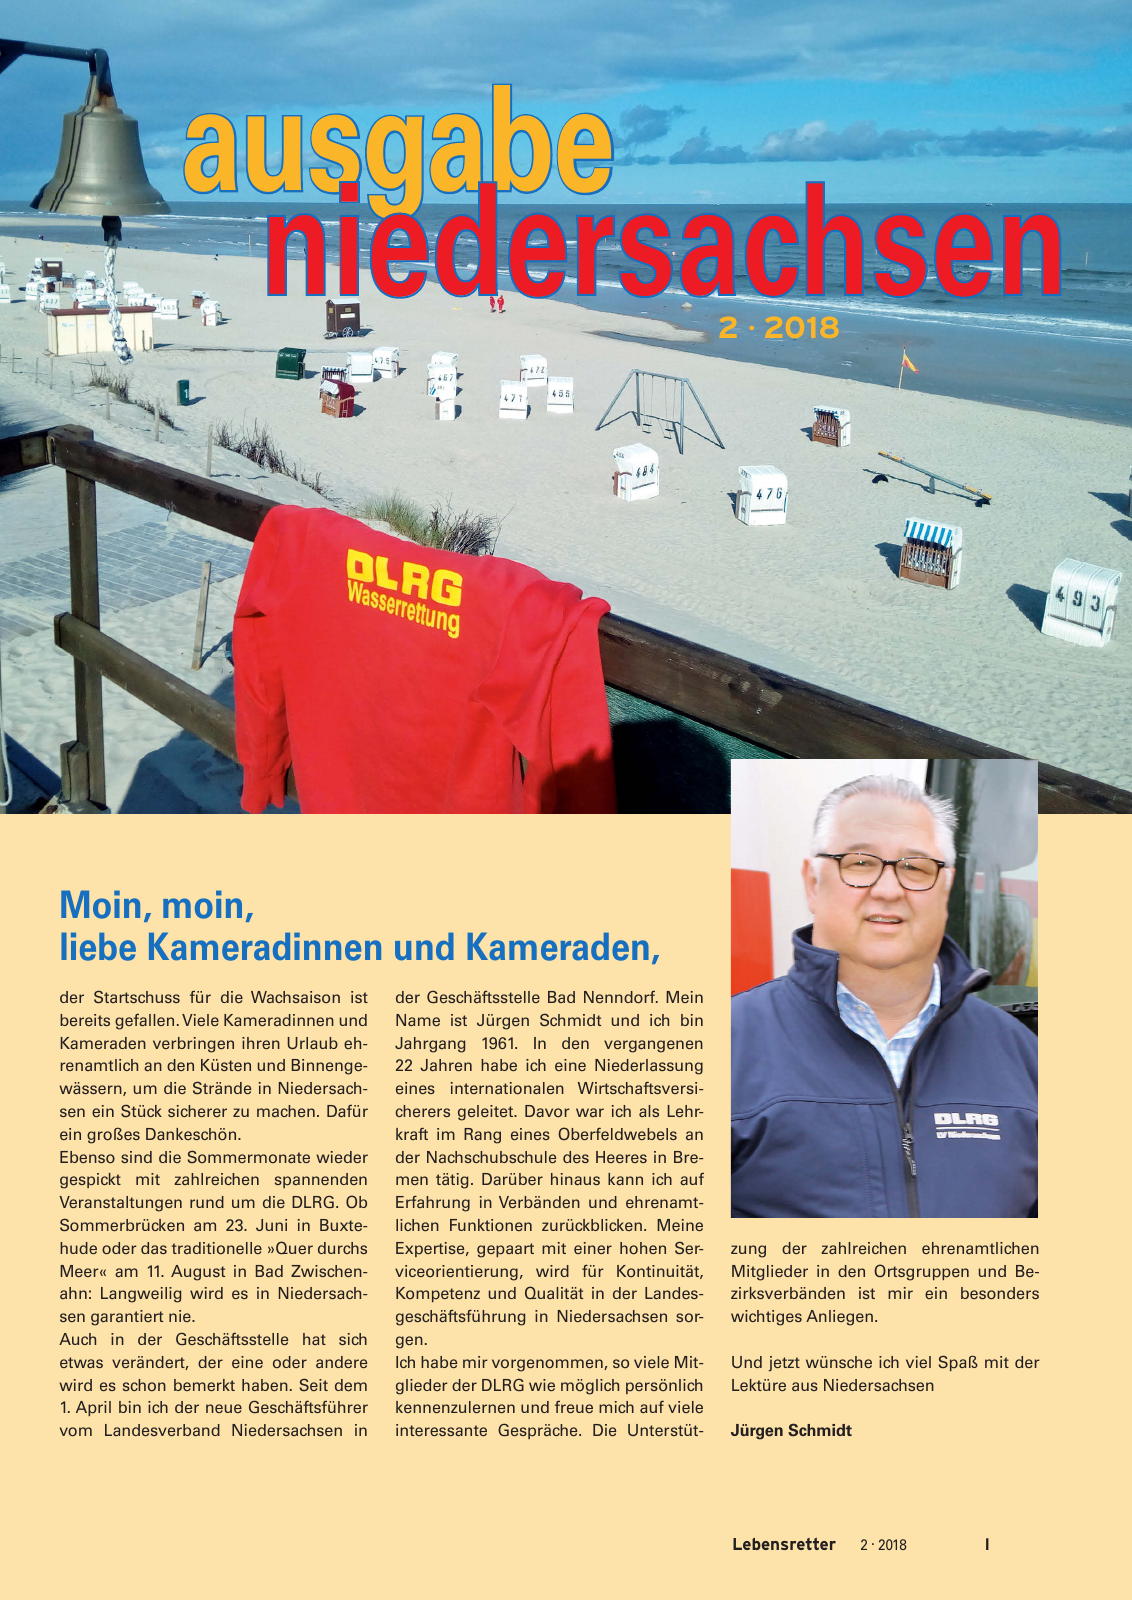 Vorschau Lebensretter 2/2018 - Regionalausgabe Niedersachsen Seite 3